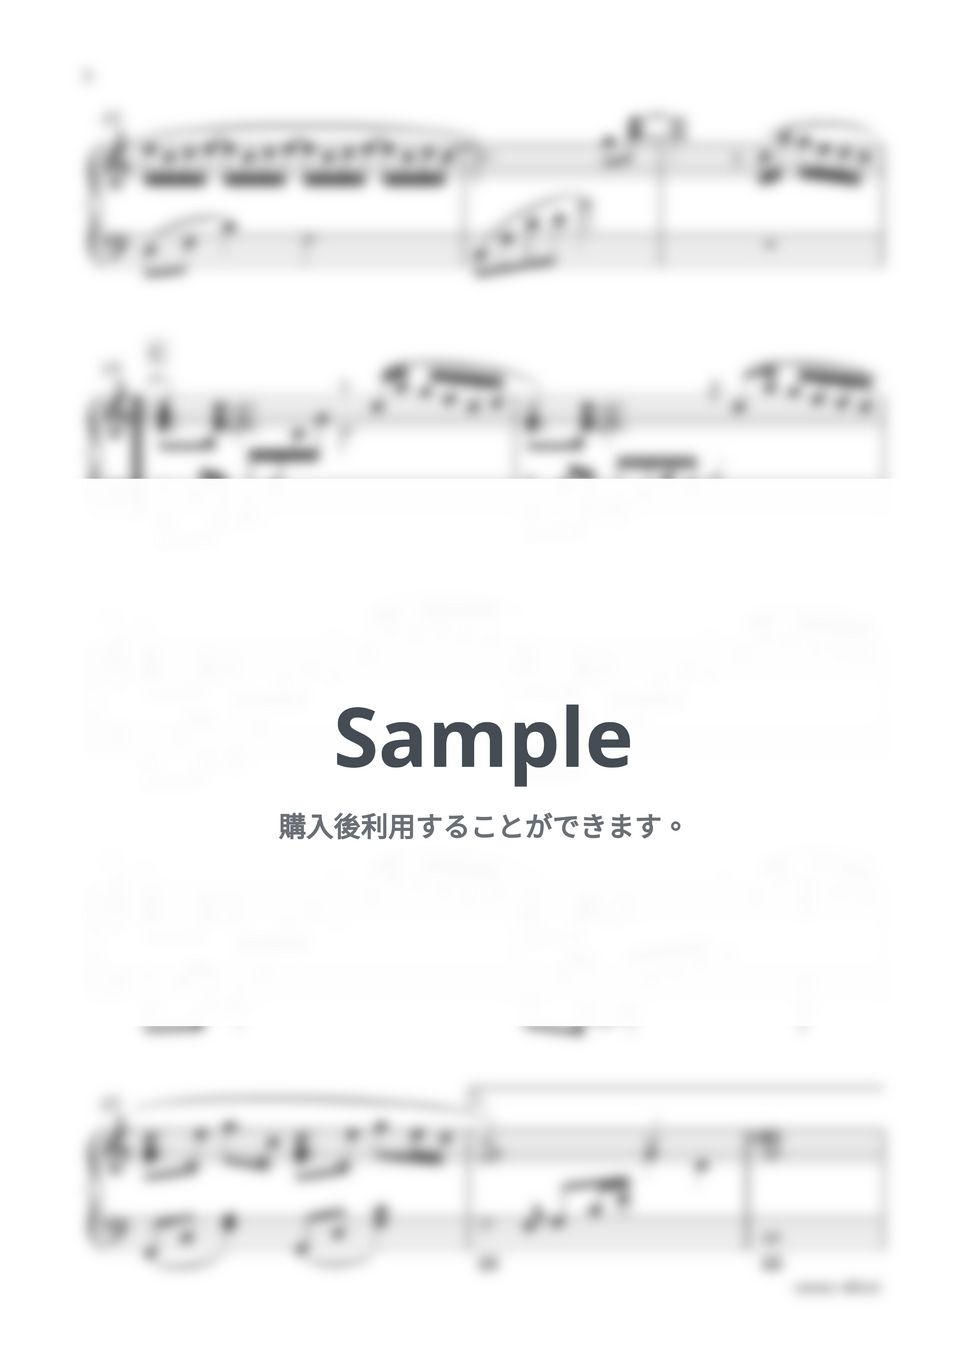 ドラマ『ファイトソング』より - Flow -Piano Version- (Perfume) by sammy